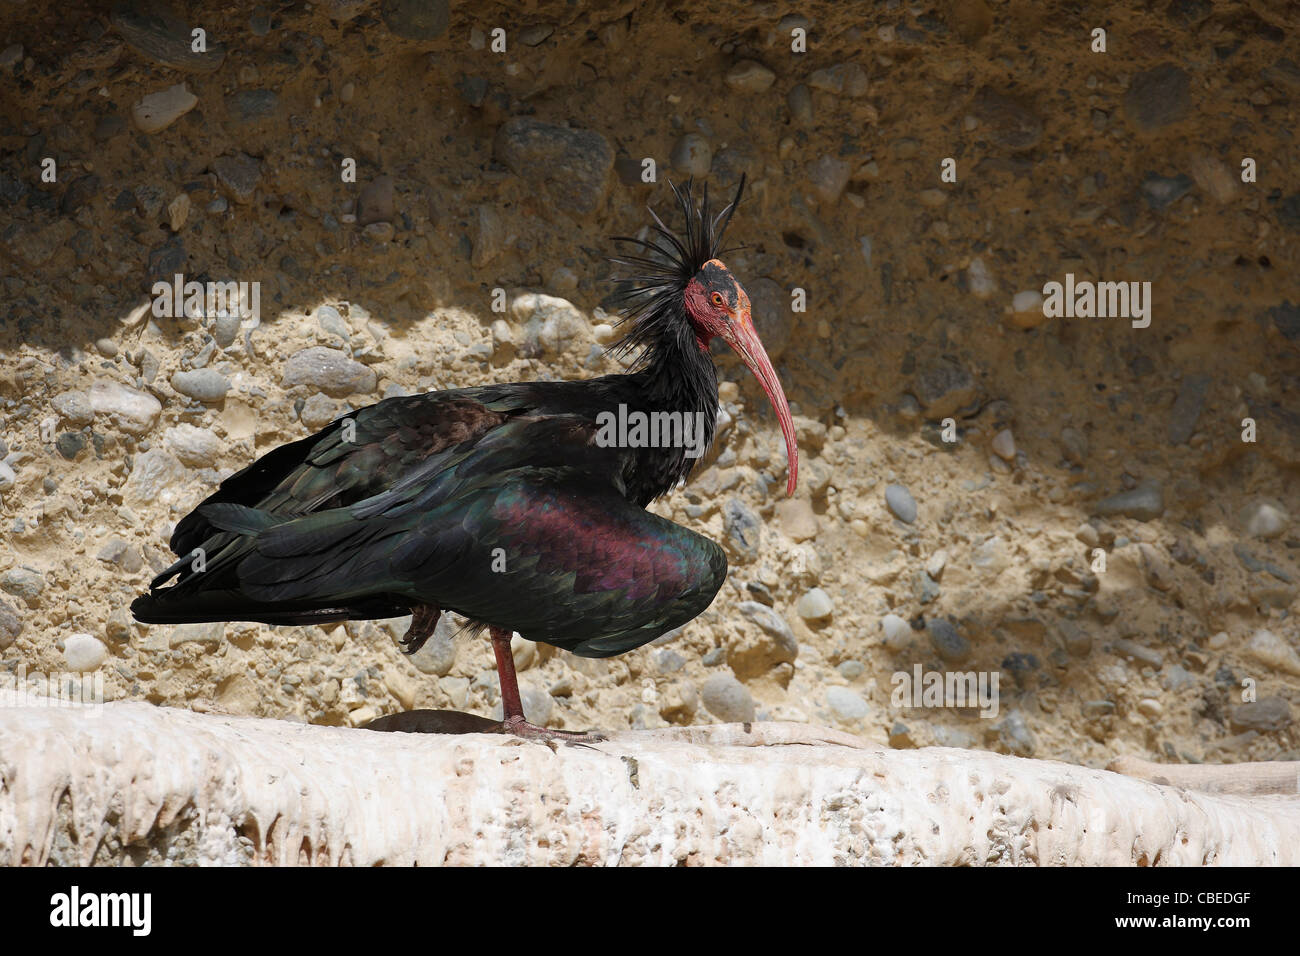 El ibis calvo (Geronticus eremita). Adulto de pie sobre una cornisa rocosa. Foto de stock